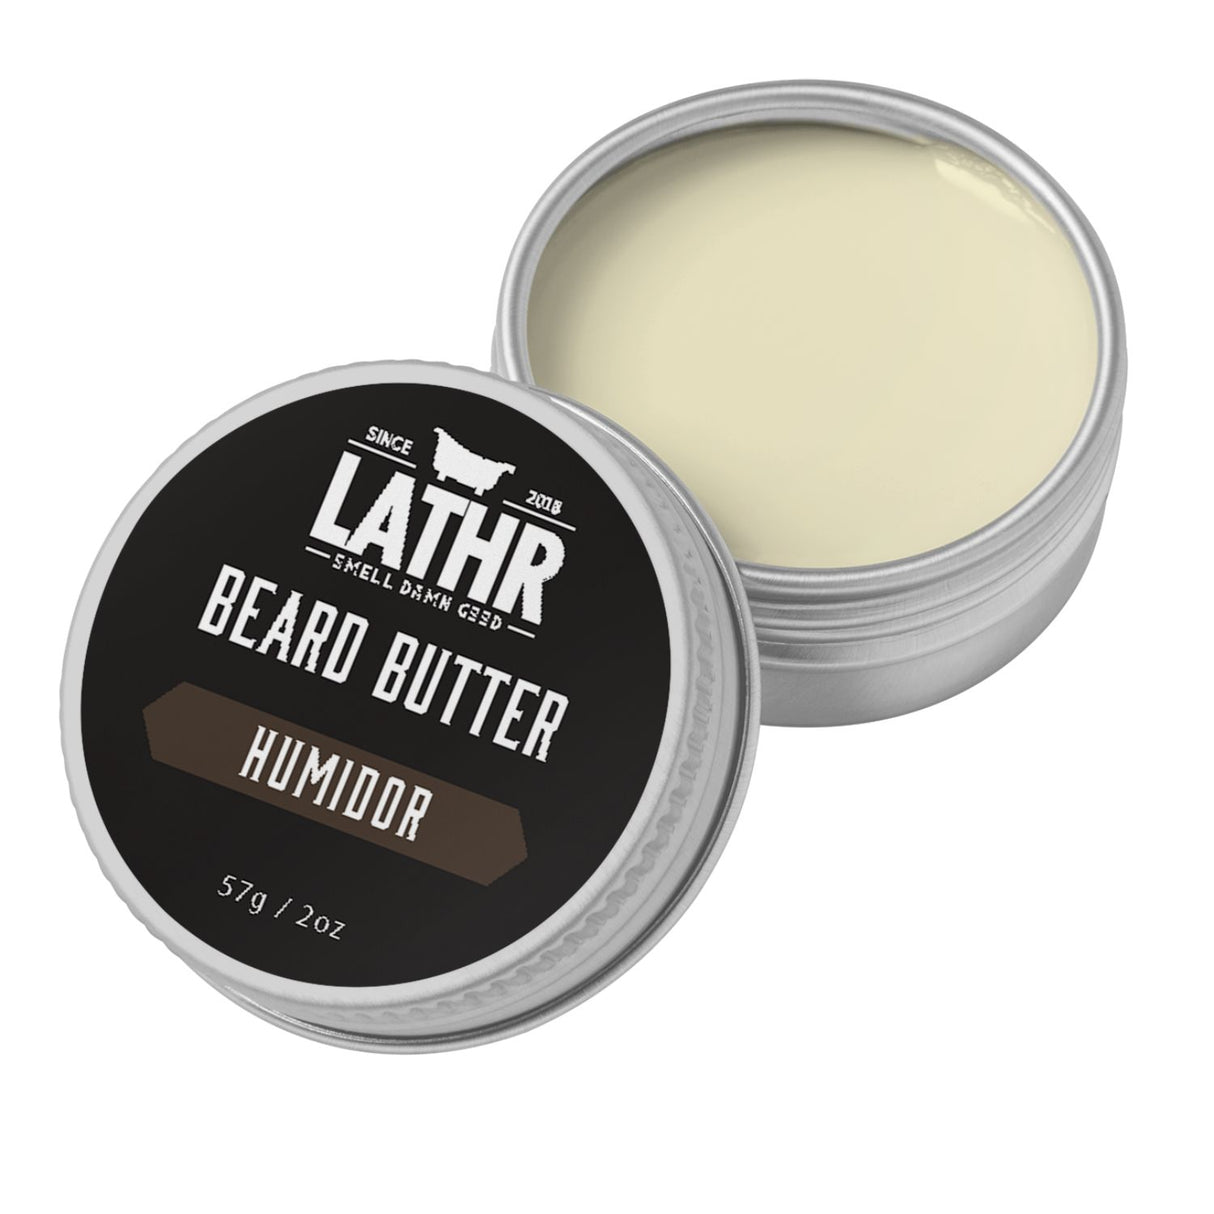 Beard Butter - Humidor